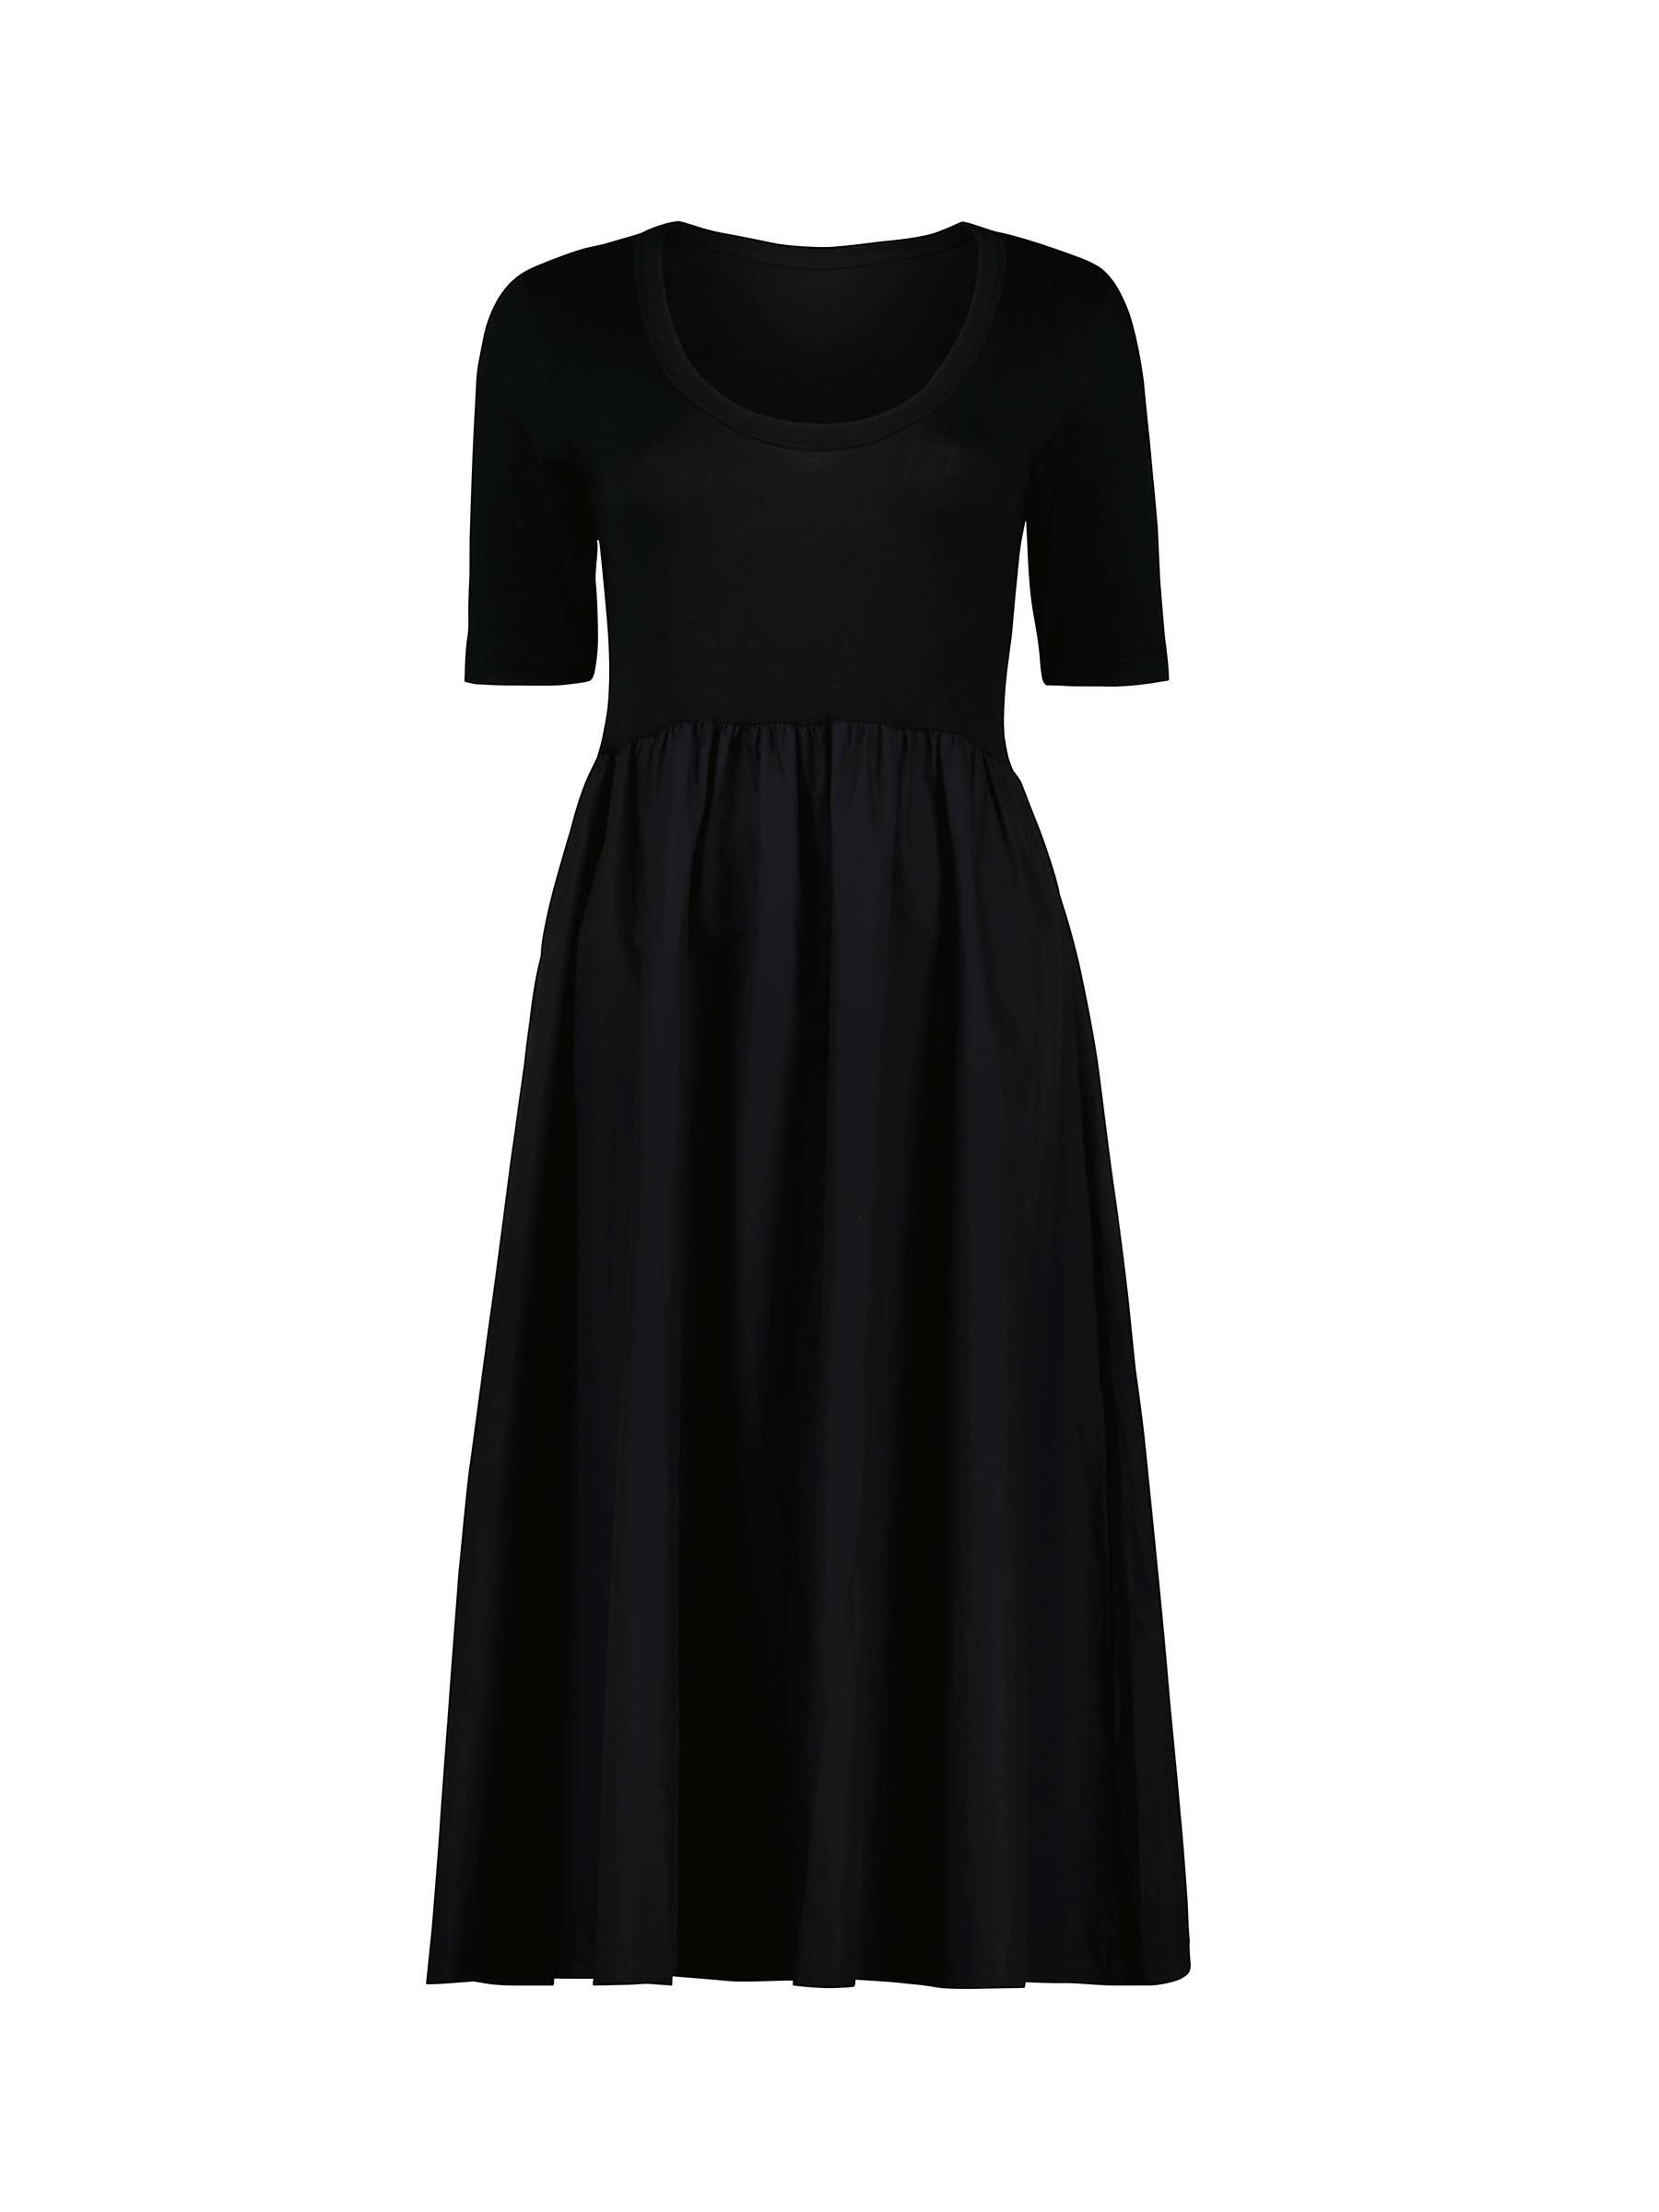 Baukjen Paula Mixed Material Dress, Caviar Black at John Lewis & Partners